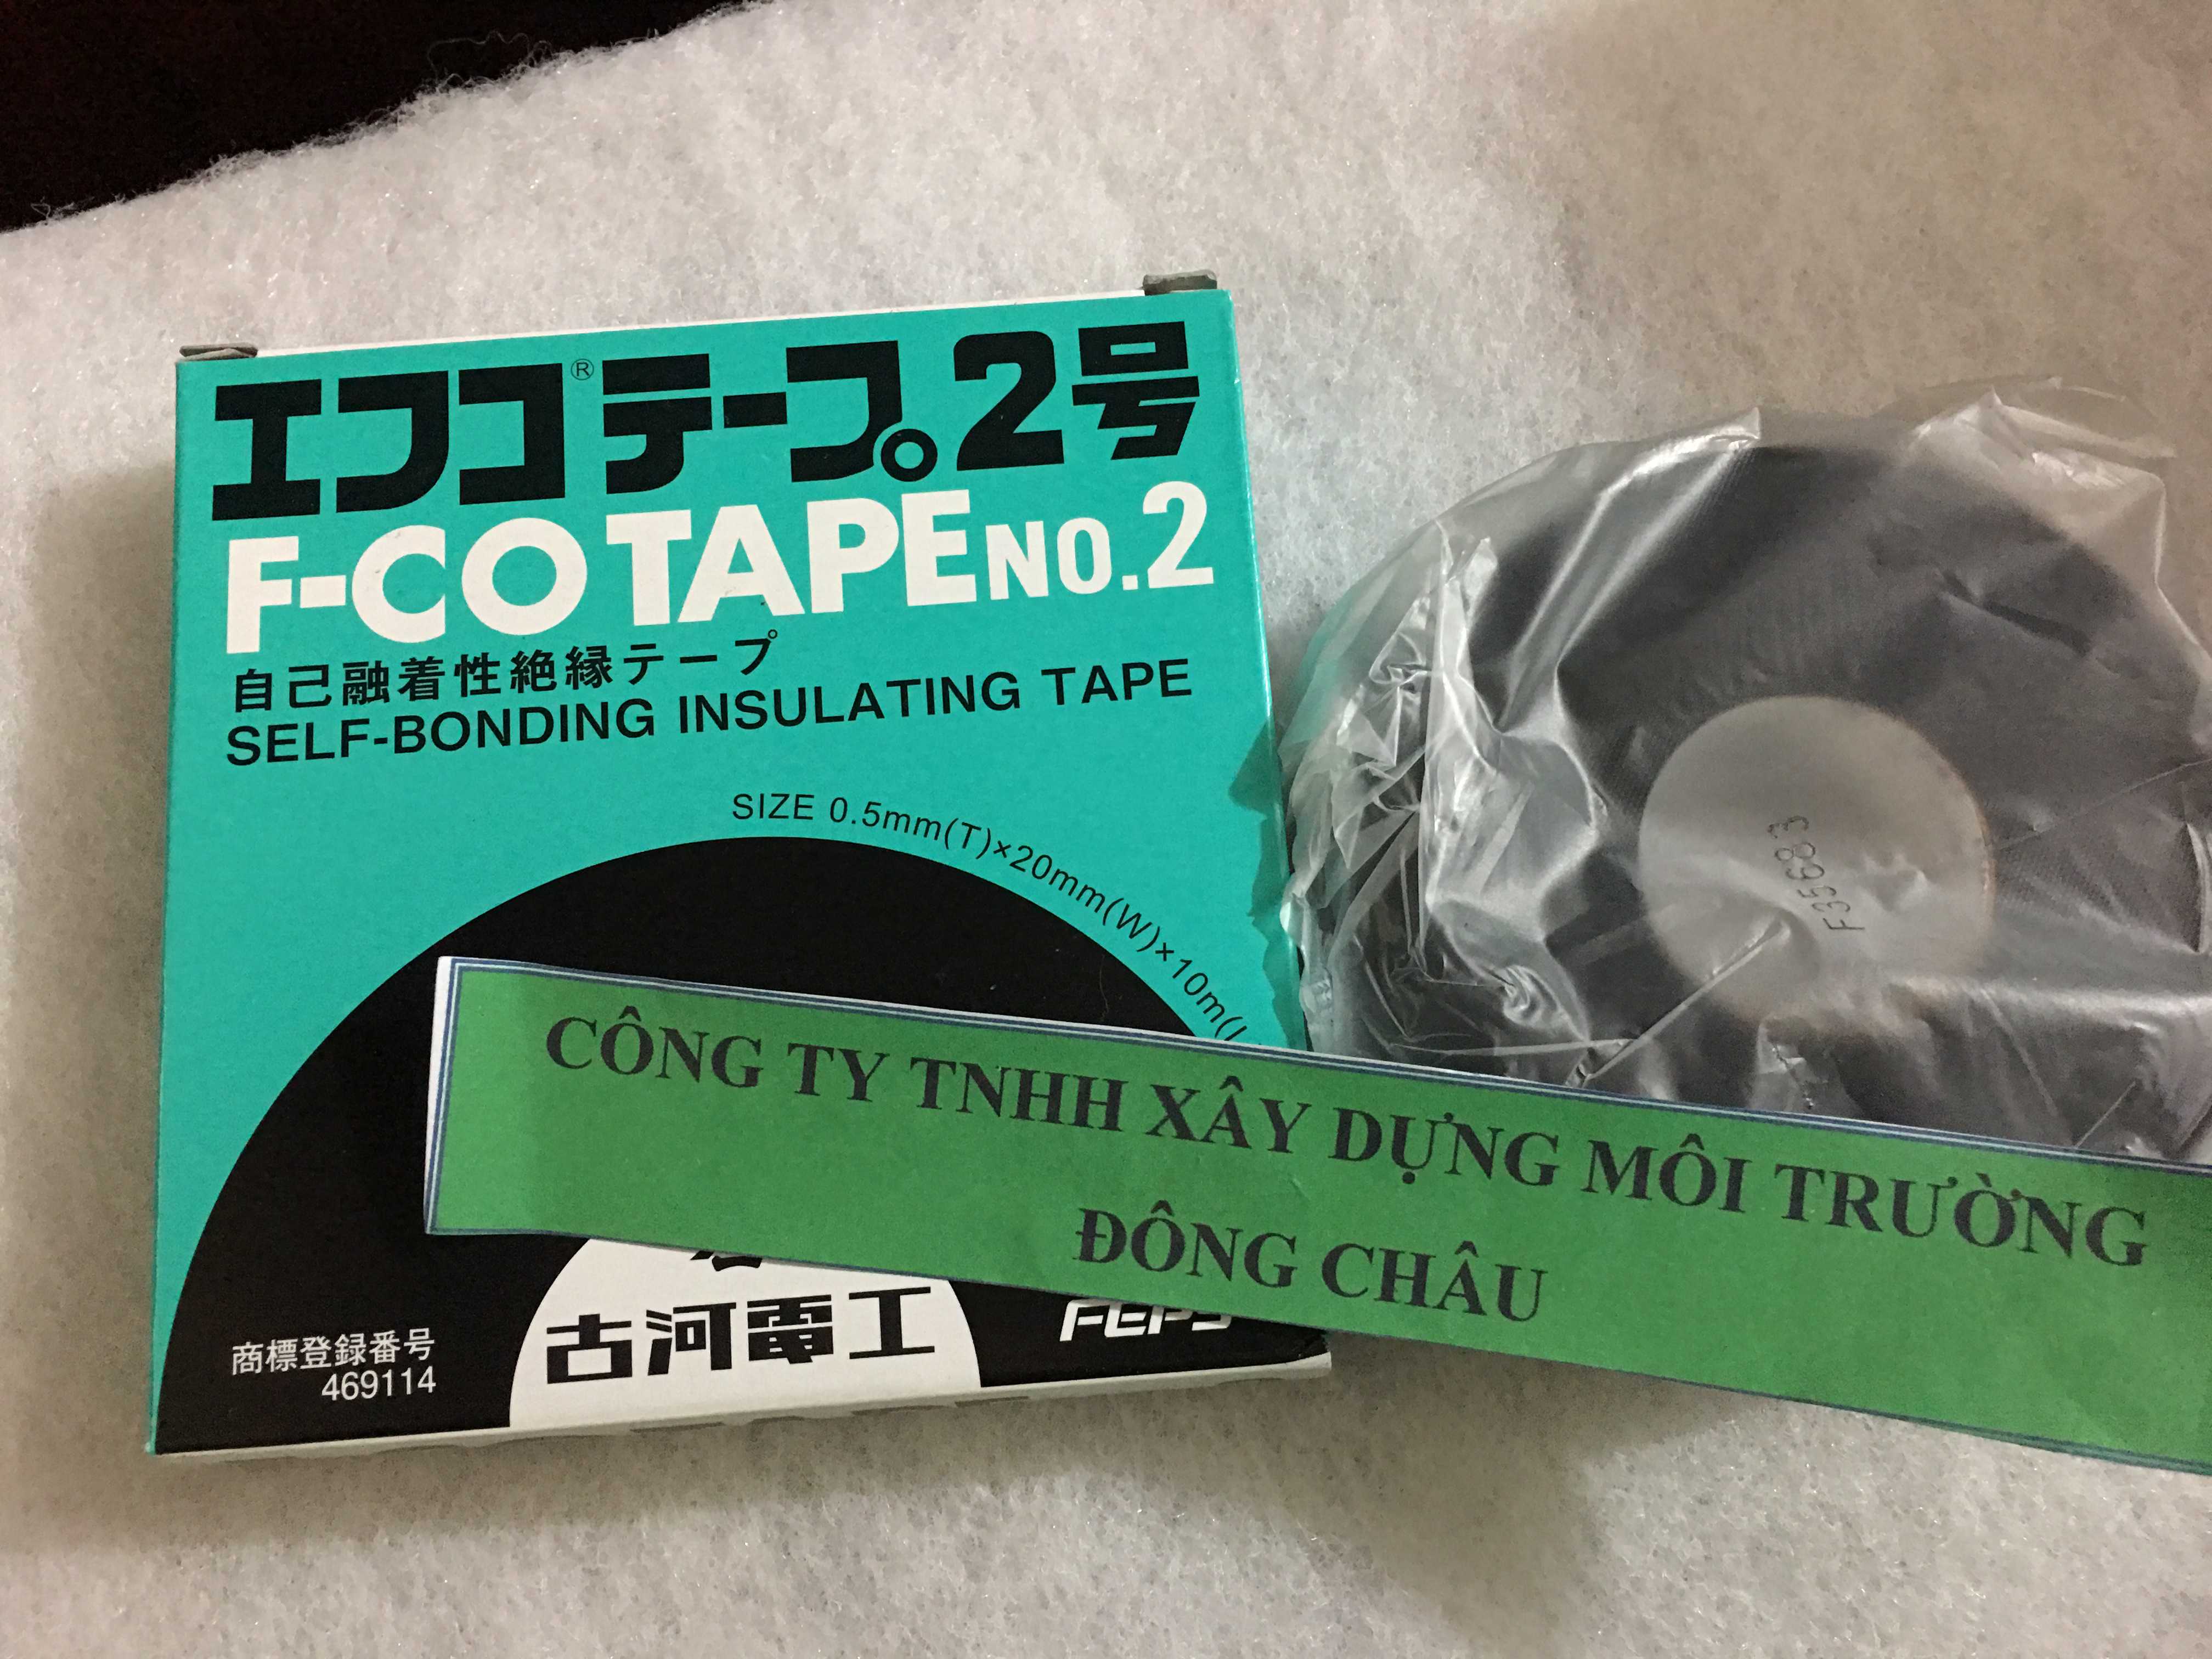 Băng keo điện FCo Tape 2 của Nhật